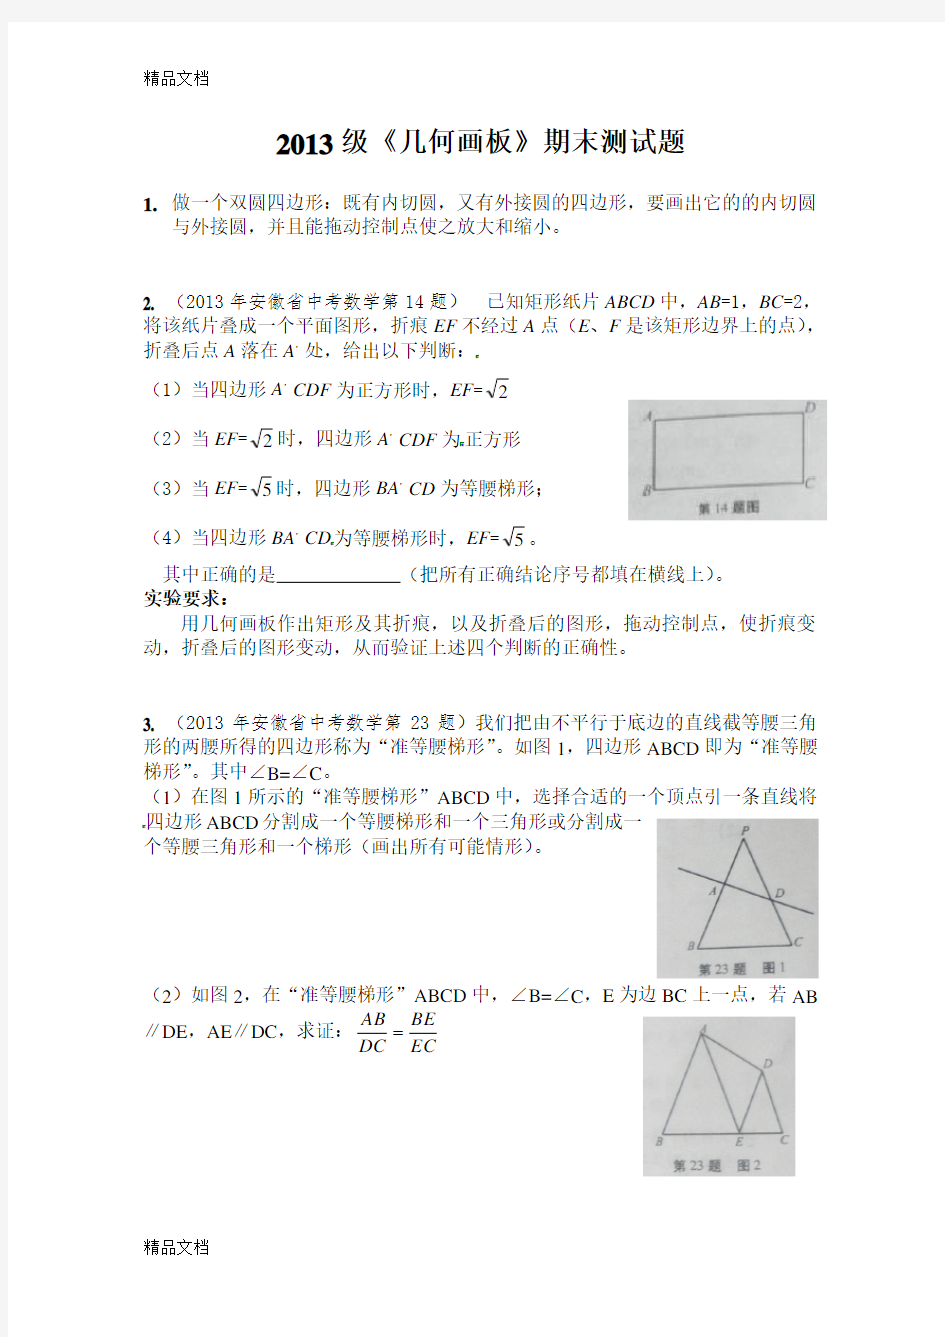 几何画板实验作业资料